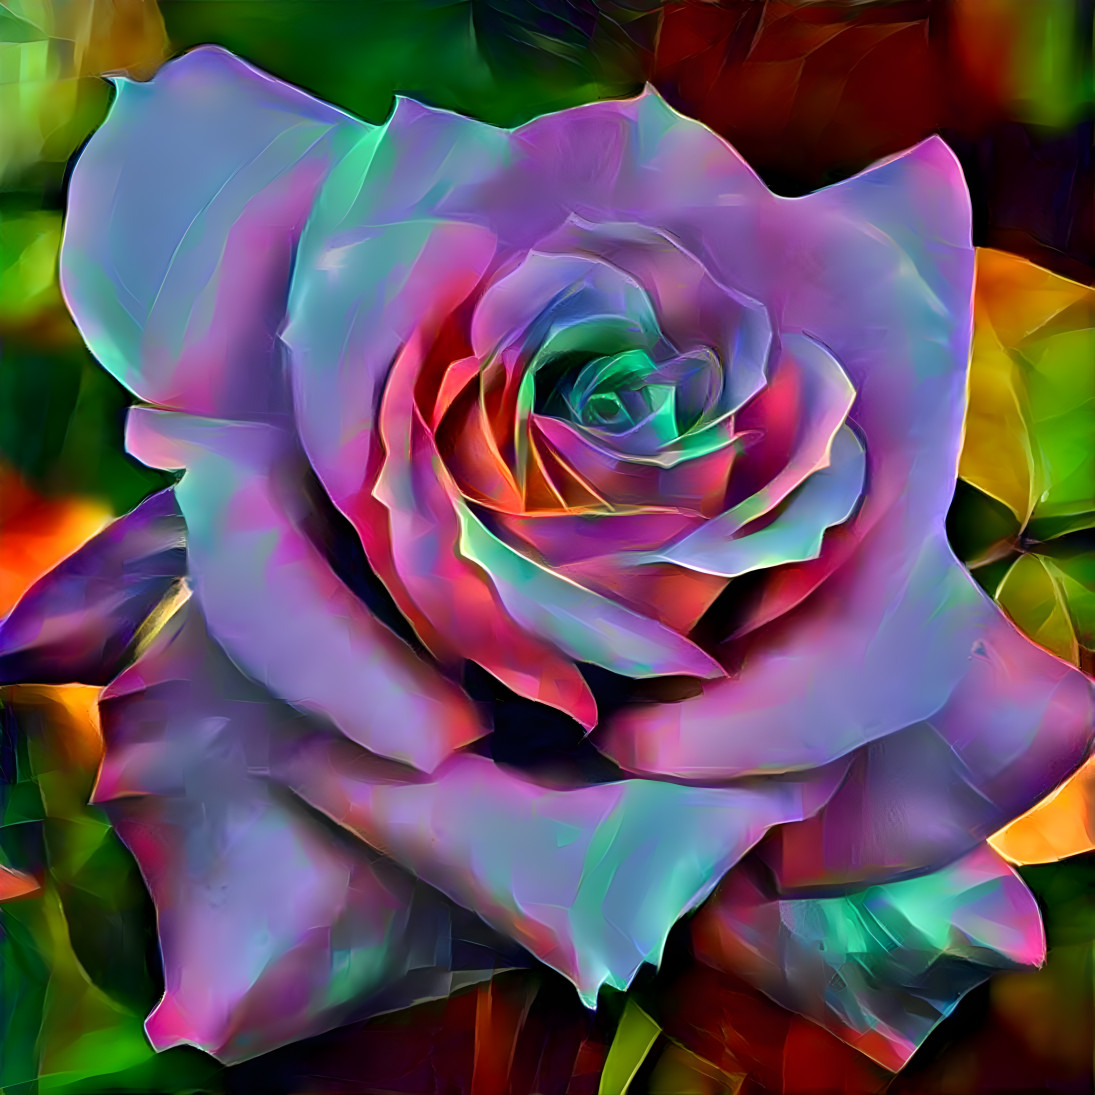 Soft satin rose